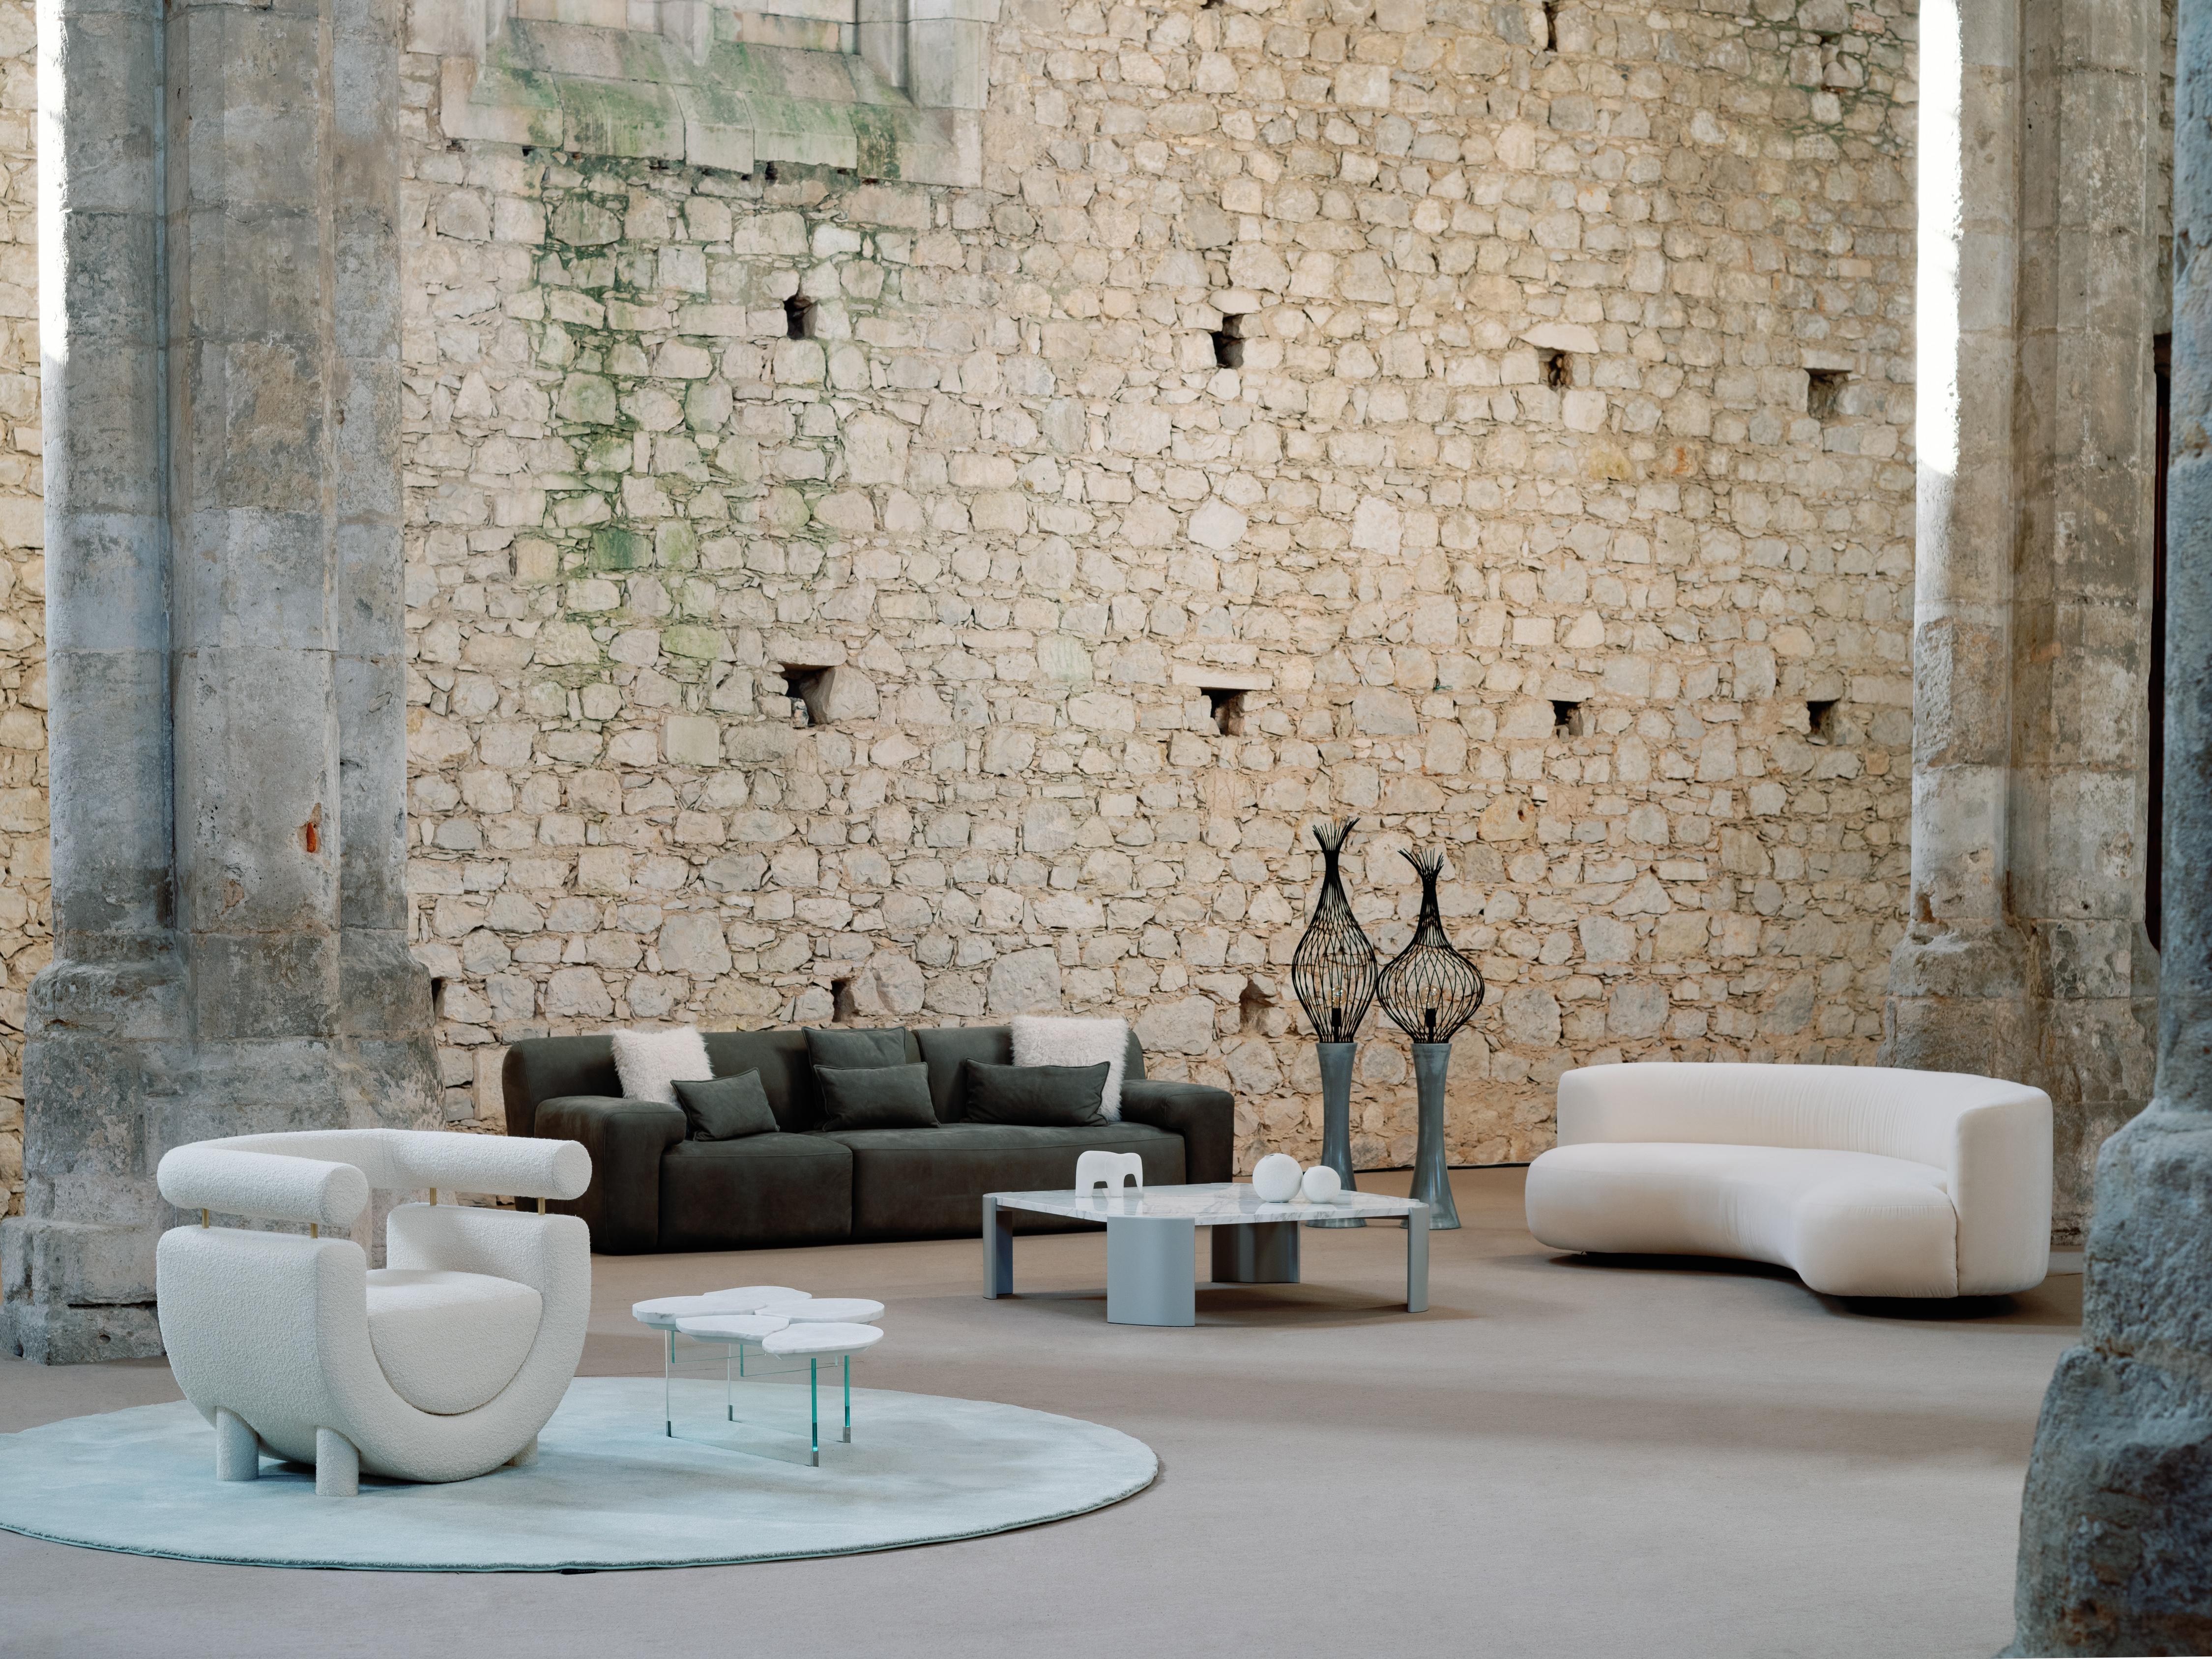 Lampadaire Monforte, Collection S, fabriqué à la main au Portugal - Europe par GF Modern.

Ce lampadaire gris satiné doté d'un abat-jour ovale unique en fil métallique noir est un concept de lumière moderne et crée une ambiance subliminale pour un